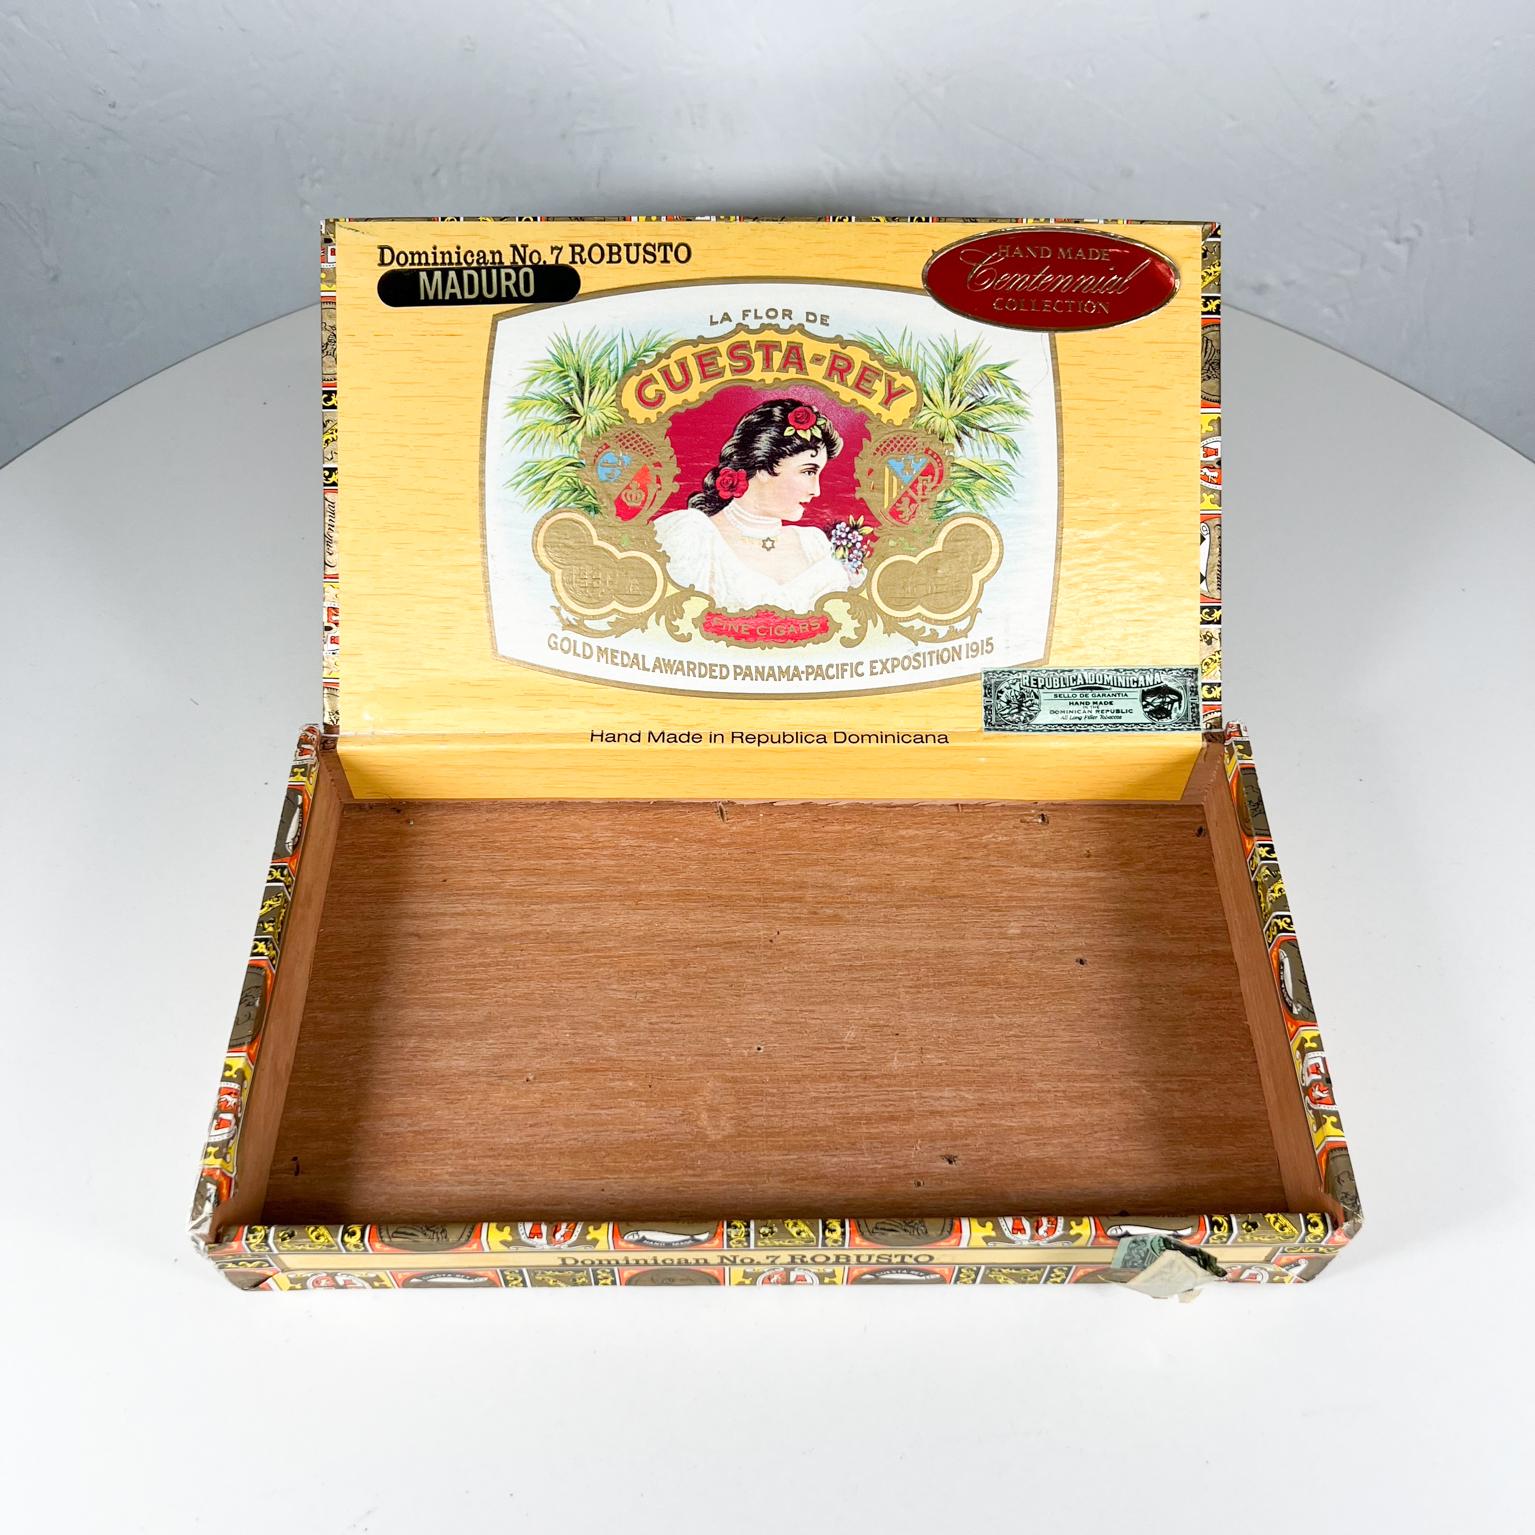 Old Vintage Cuesta -Rey 10 Cigar Box Dominican No 7 Robusto Centennial 4